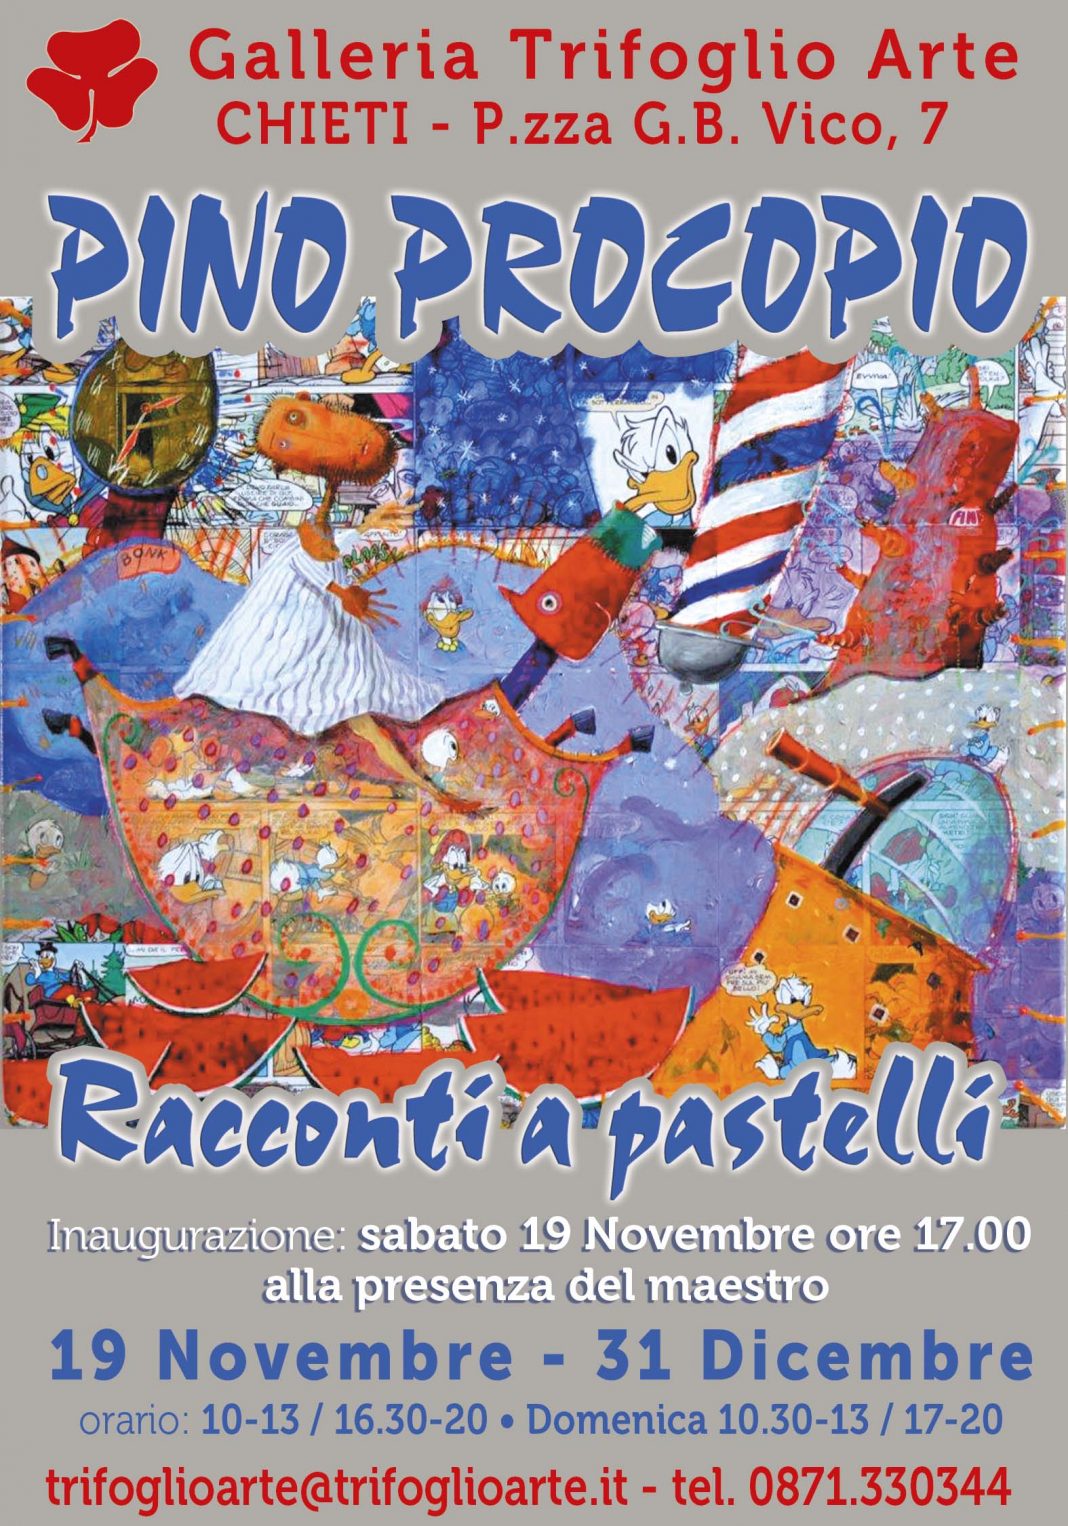 Pino Procopio – Racconti a pastellihttps://www.exibart.com/repository/media/eventi/2016/11/pino-procopio-8211-racconti-a-pastelli-1068x1526.jpg